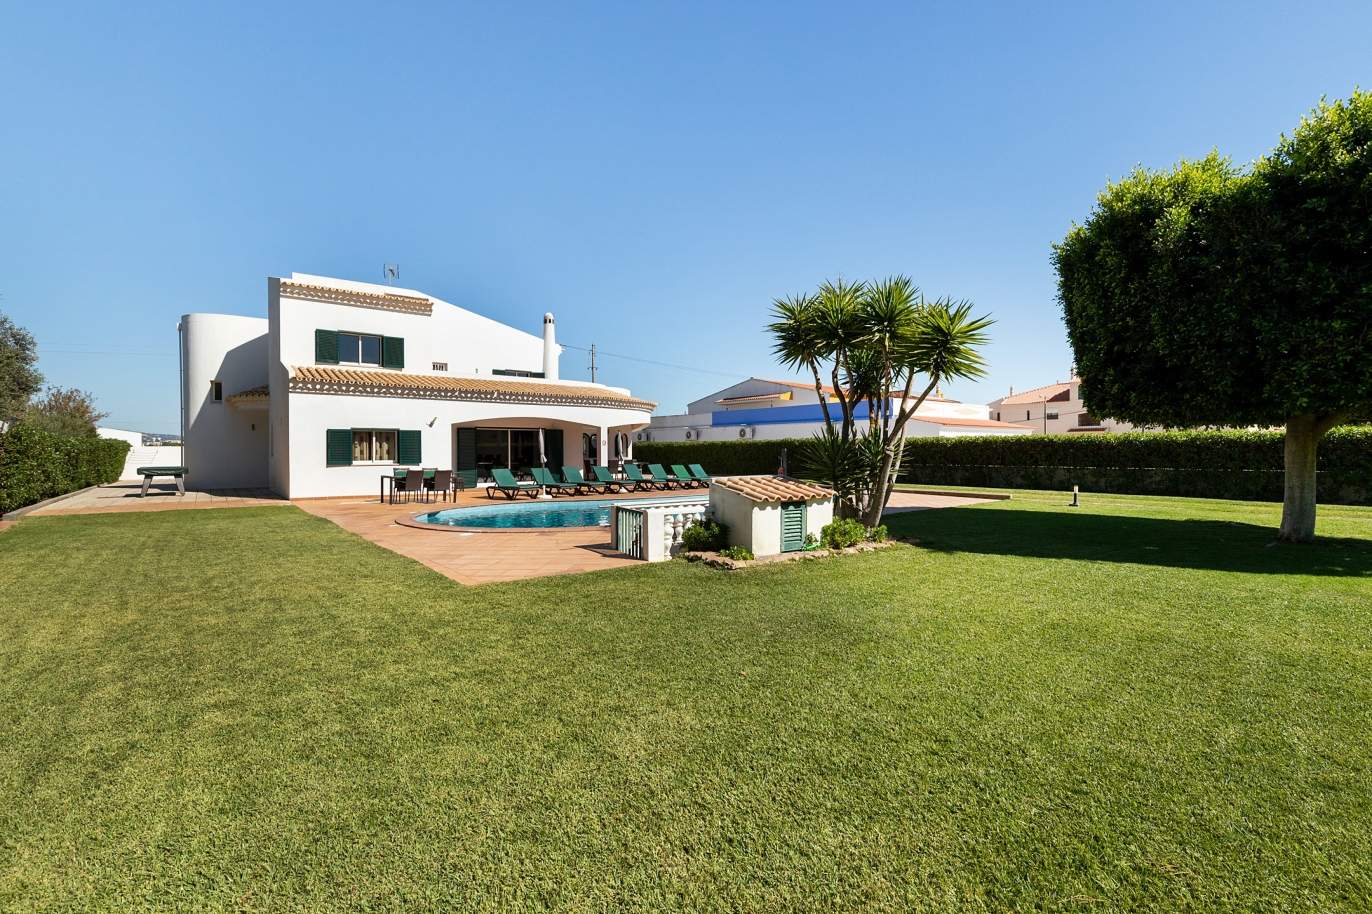 4 bedroom villa with pool and garden, Albufeira, Algarve_180585